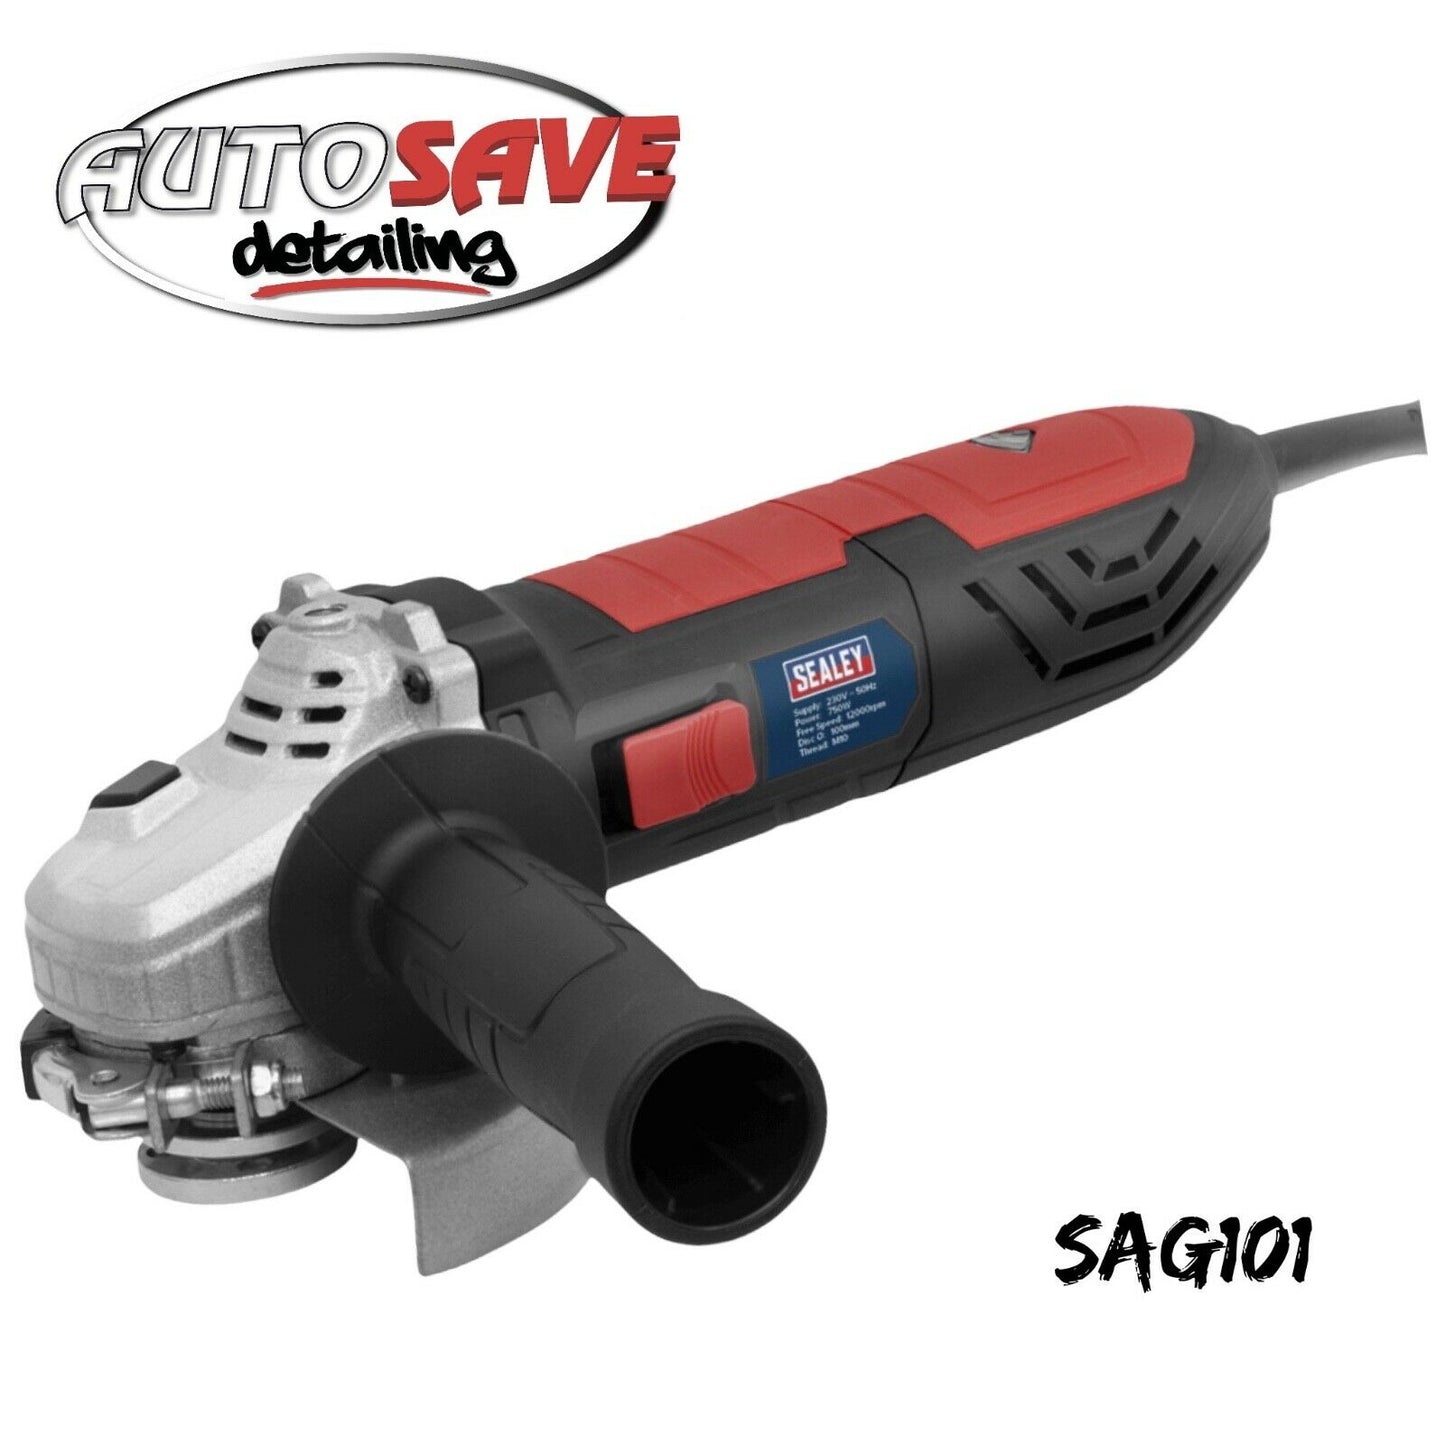 Sealey SAG101 230V 100mm 750W Angle Grinder